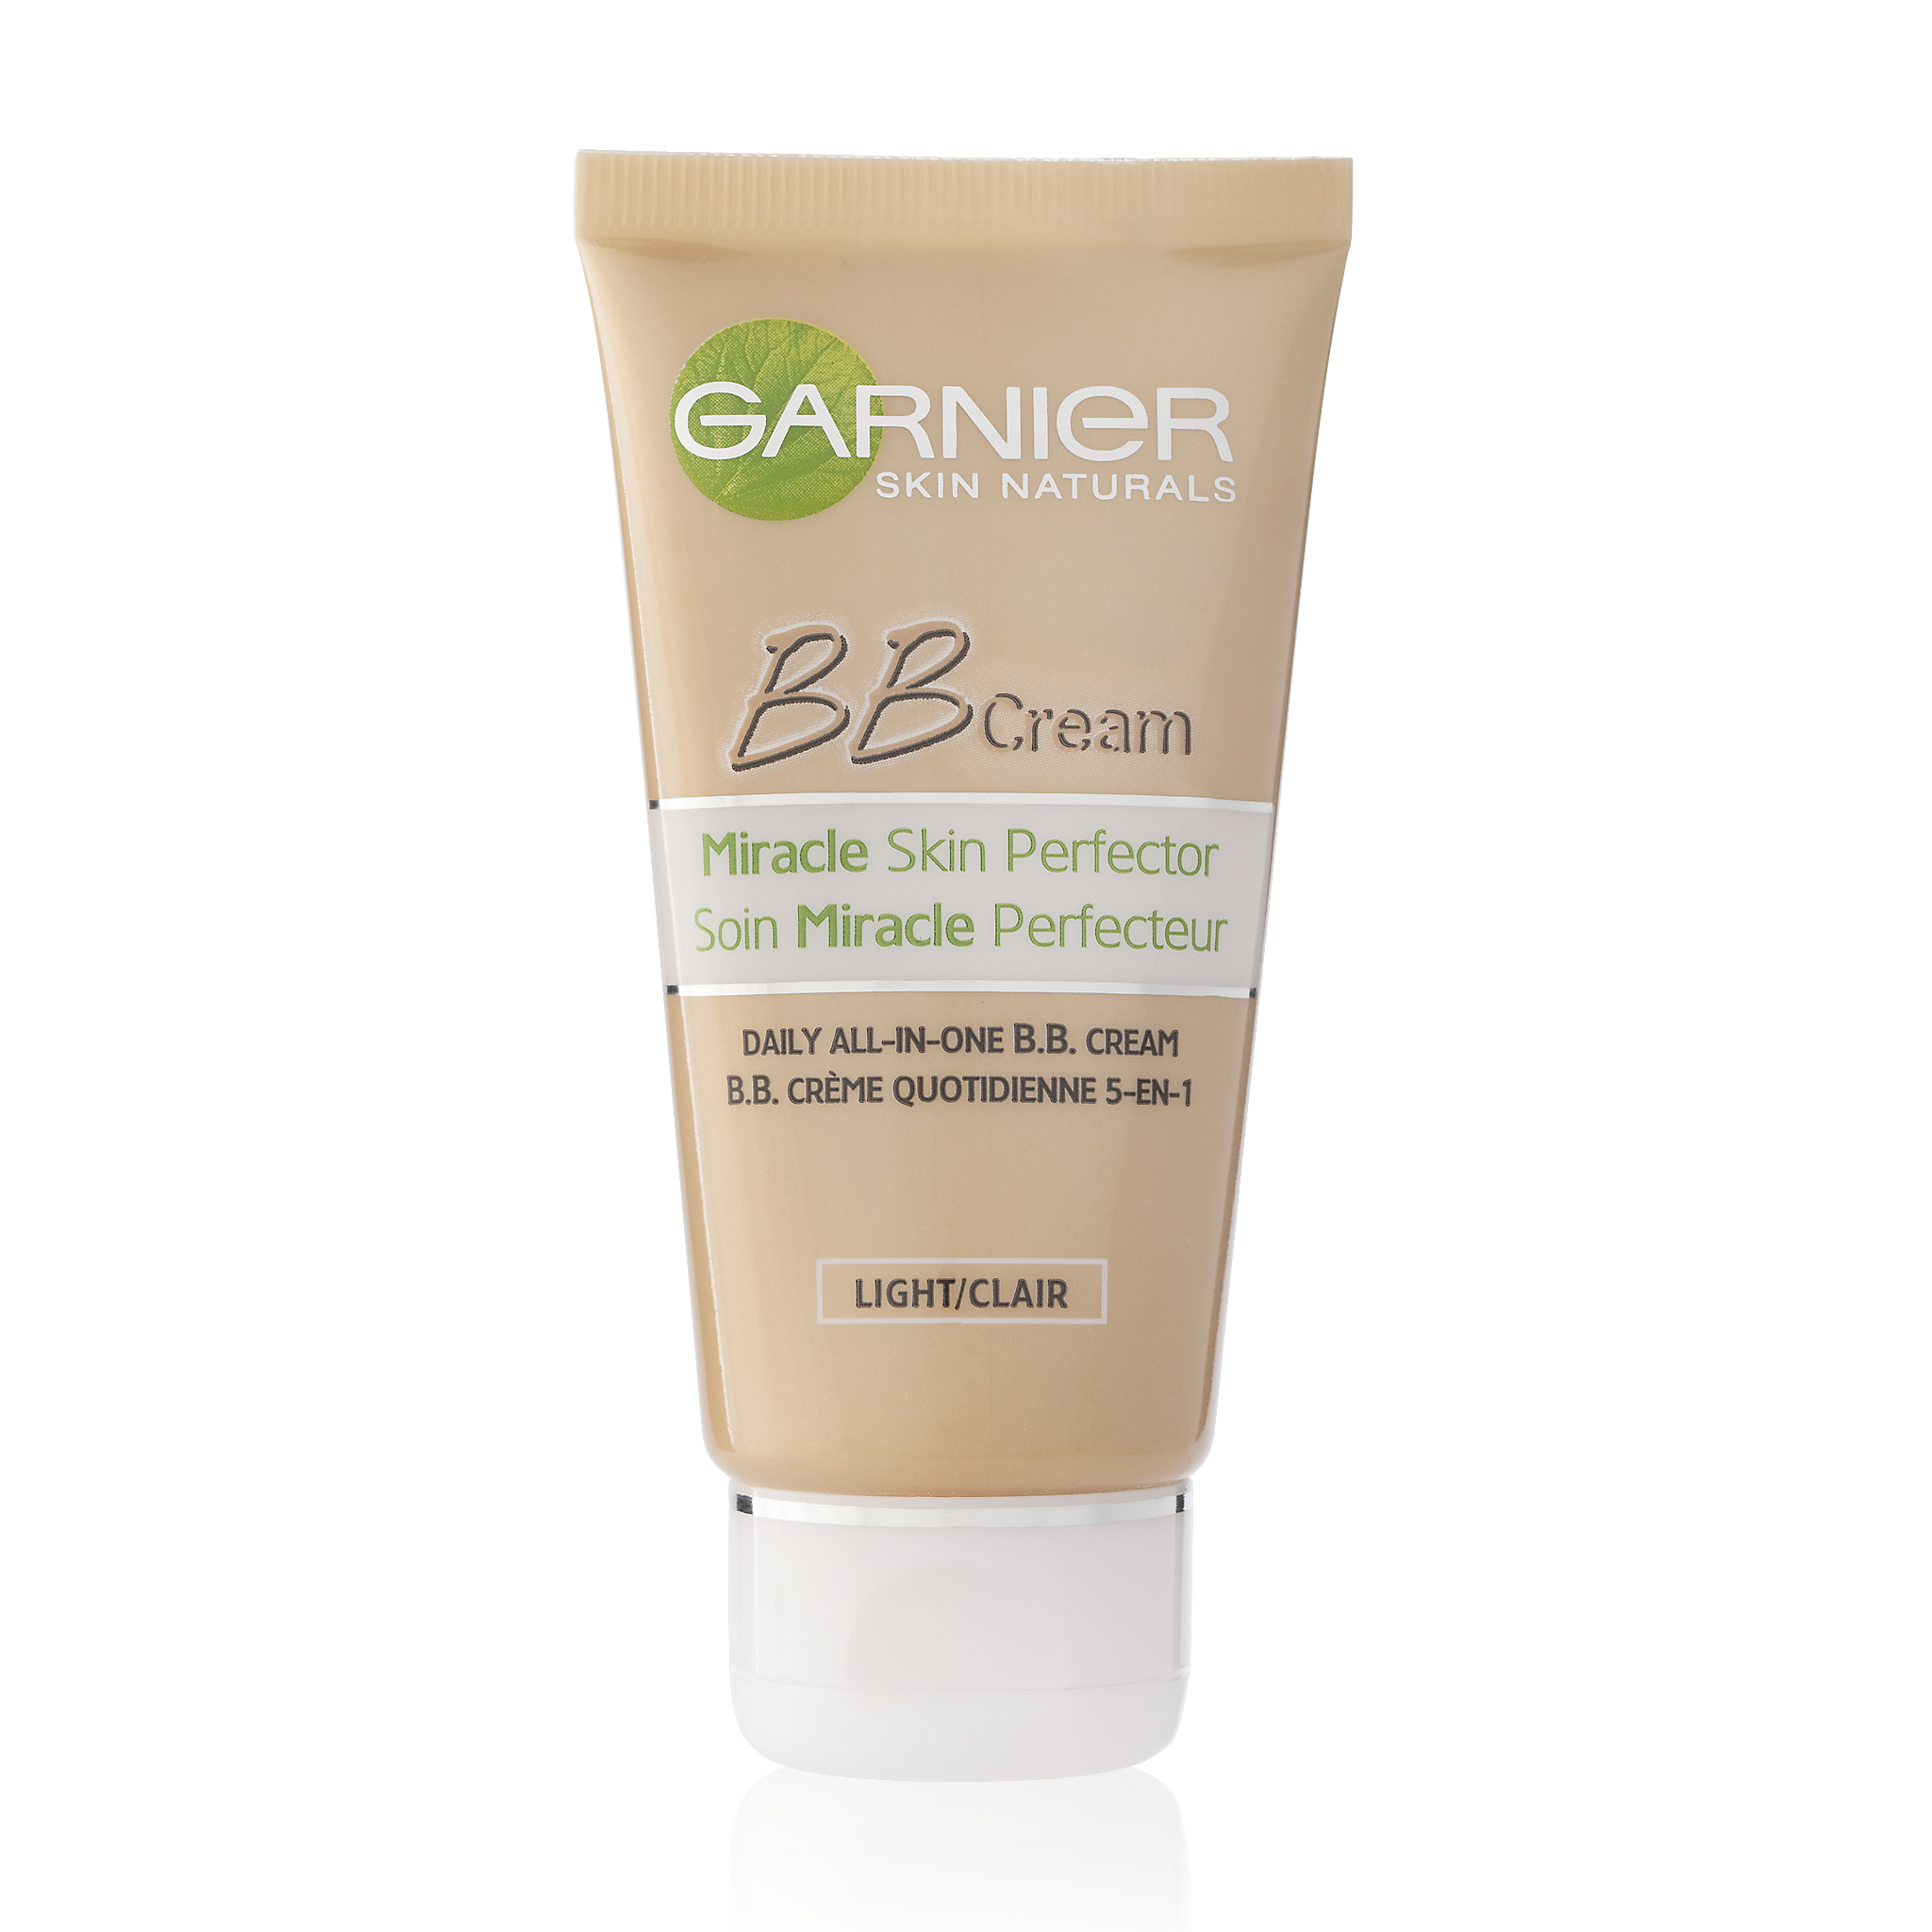 Garnier Skinactive Face SkinActive – BB Cream Classic Light 5-in-1 Dagverzorging - 50ml – Getinte Dagcrème beige